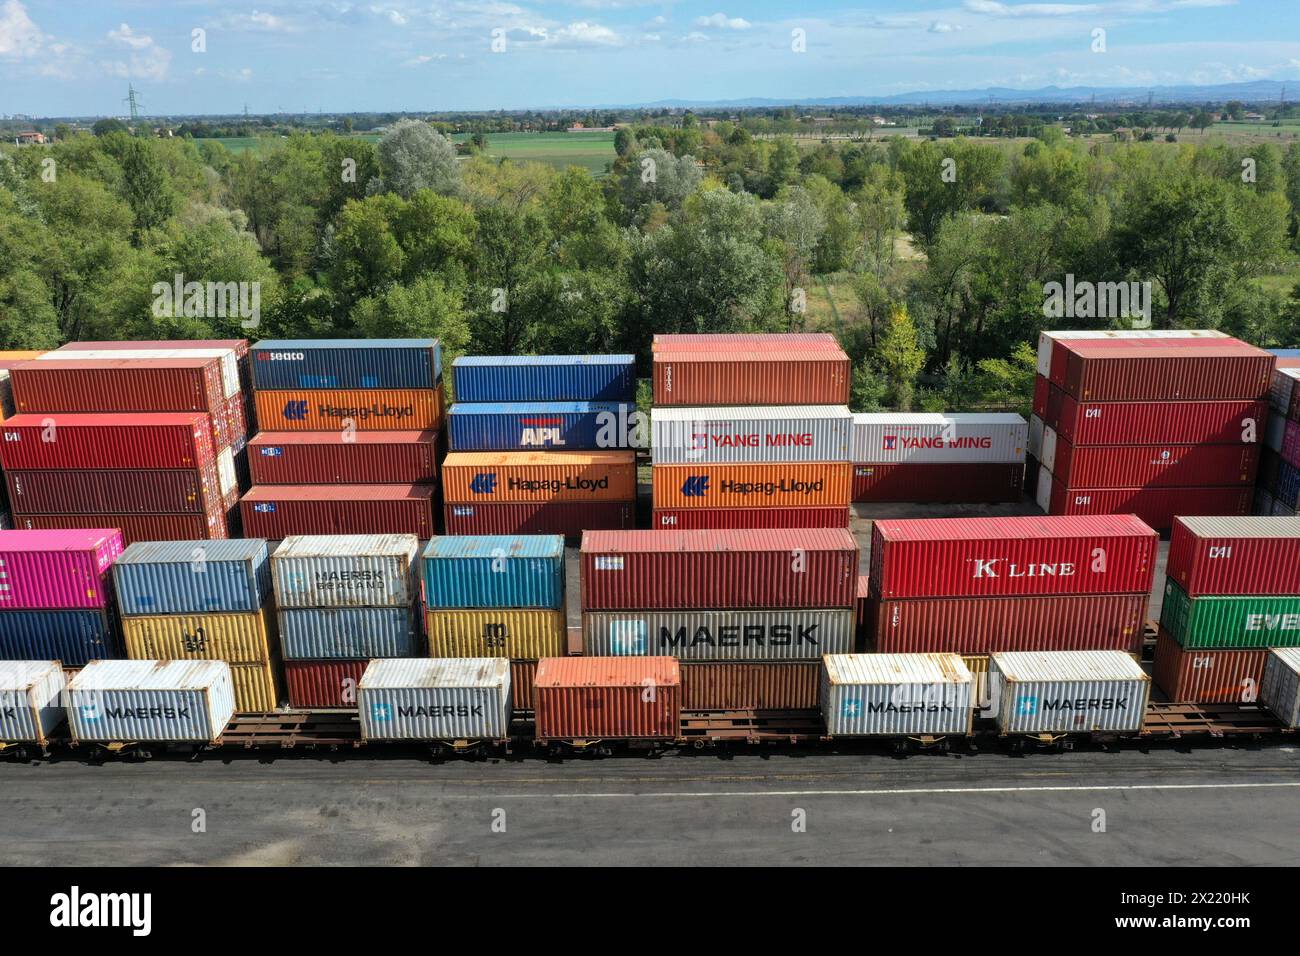 Un gruppo di contenitori intermodali di vari colori pronti per essere caricati a bordo di una nave container. Concetto di "Standard Cargo Worthy Shipping Conta" Foto Stock